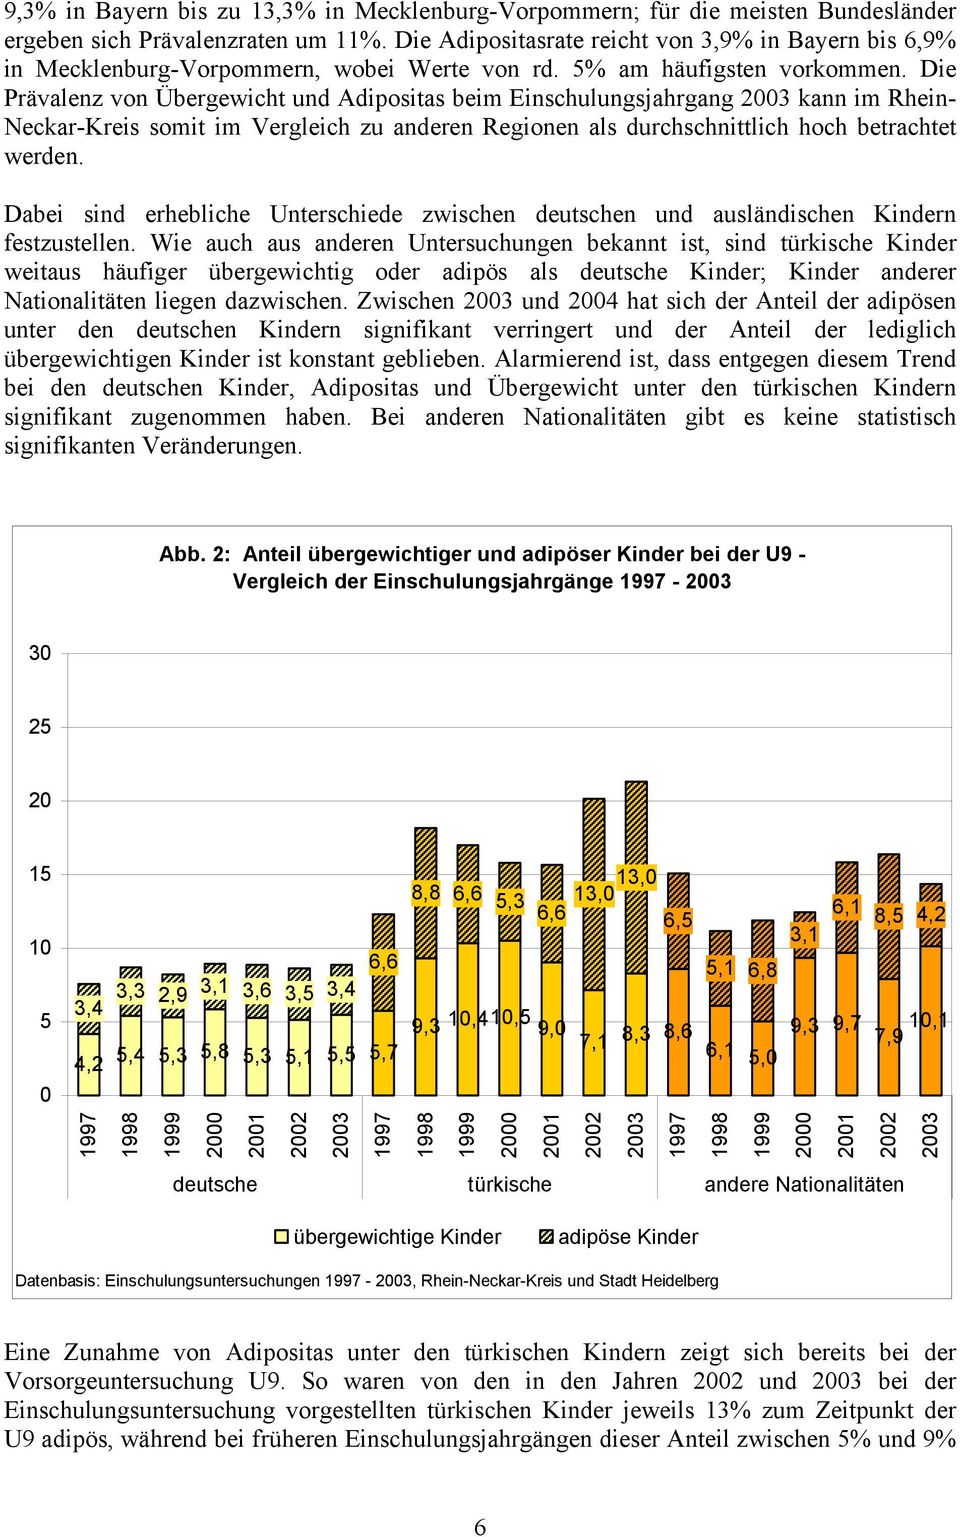 Die Prävalenz von Übergewicht und Adipositas beim Einschulungsjahrgang 2003 kann im Rhein- Neckar-Kreis somit im Vergleich zu anderen Regionen als durchschnittlich hoch betrachtet werden.